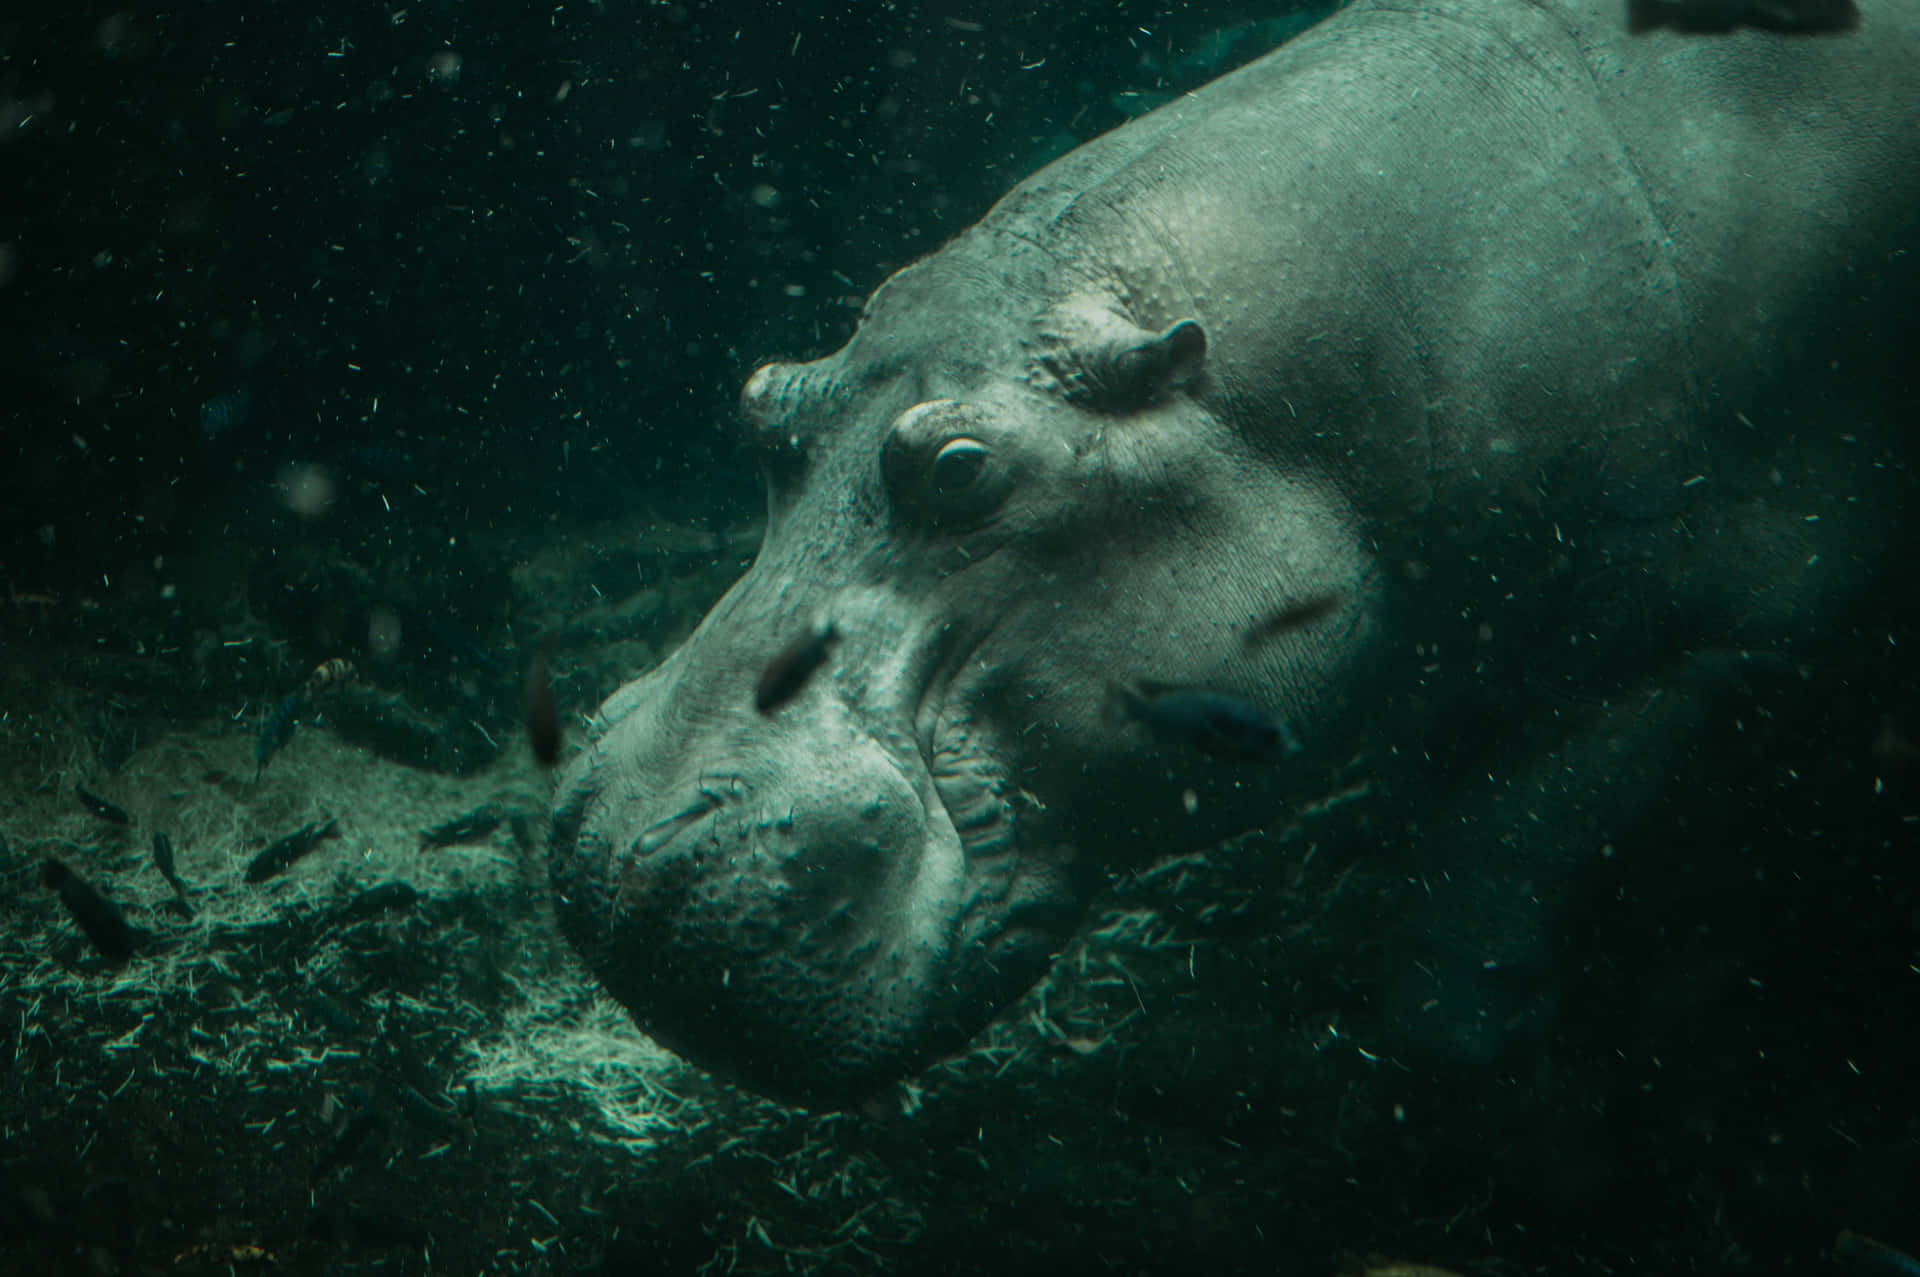 Imagende Un Hipopótamo Comiendo Y Buceando En Un Río.